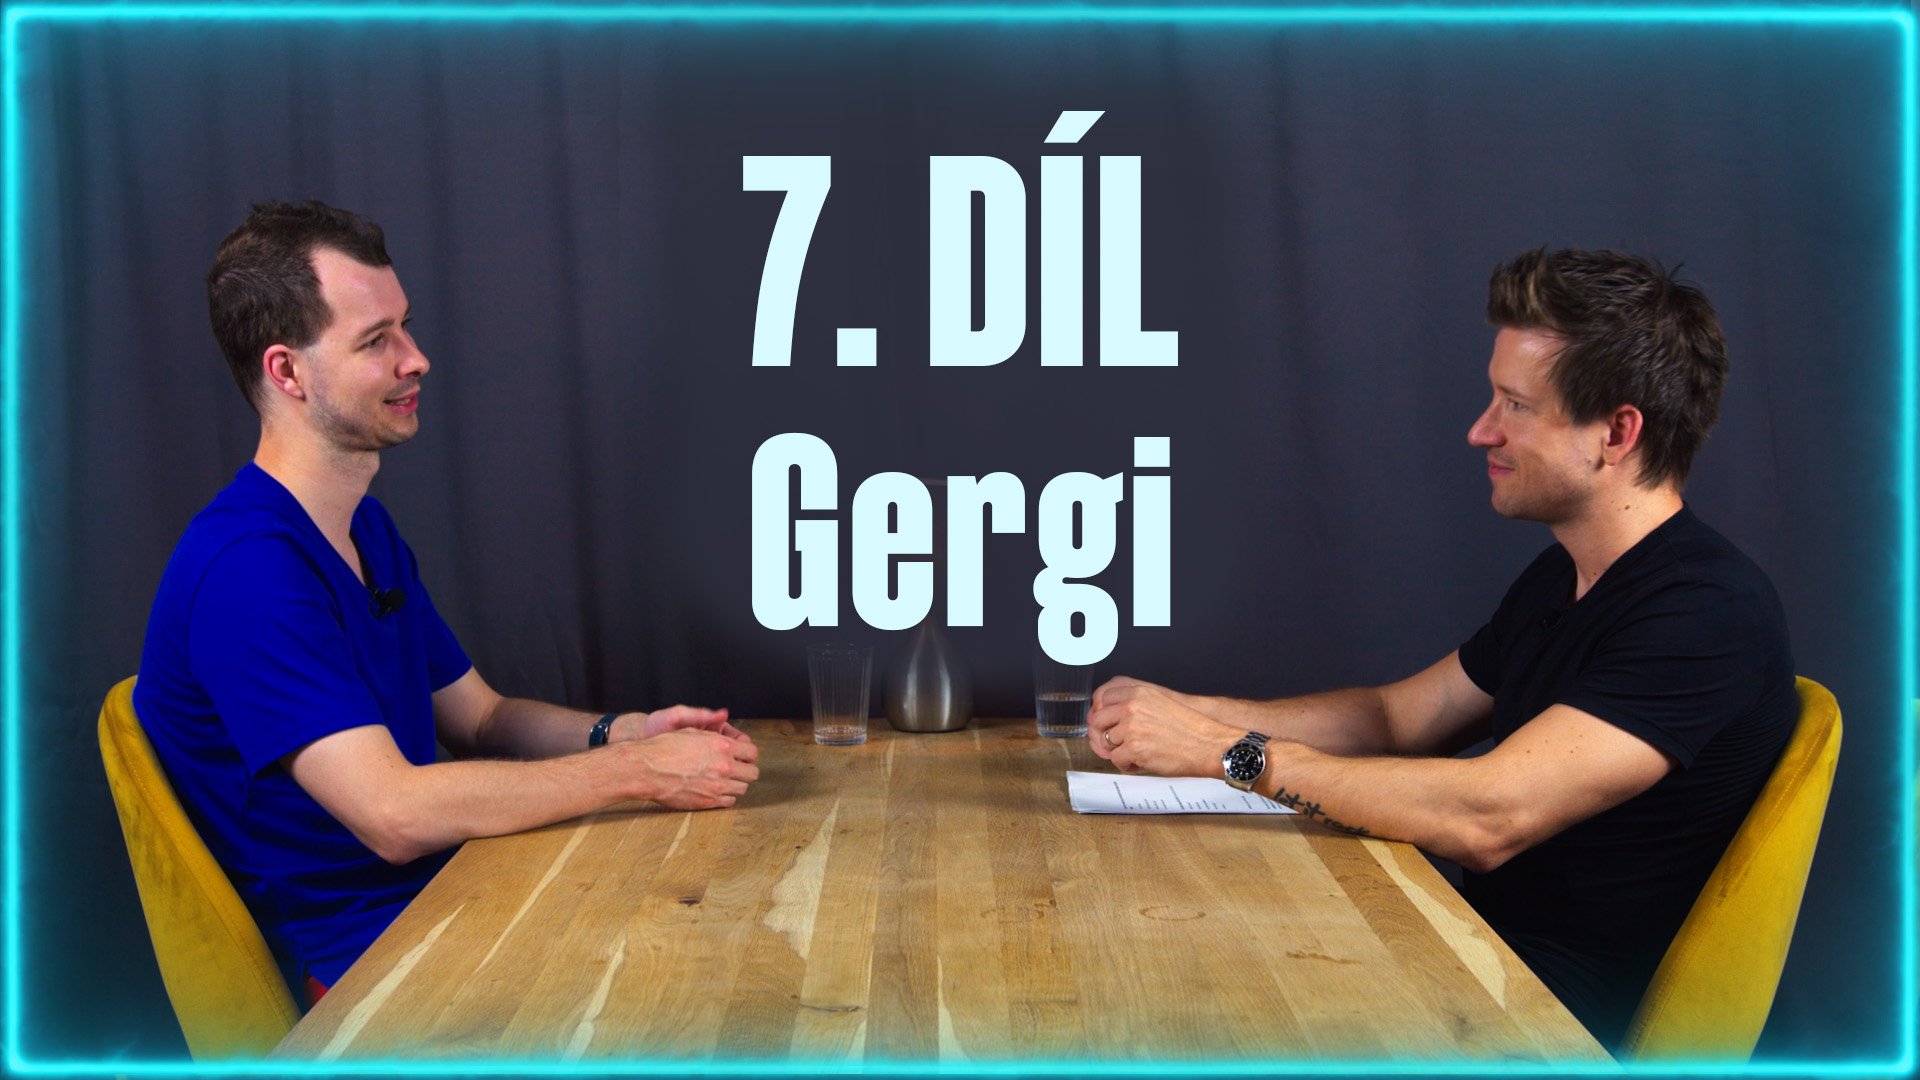 Hostem sedmého dílu sázkařského podcastu je aktuální jednička v analýzách na Tipsportu - Gergi!